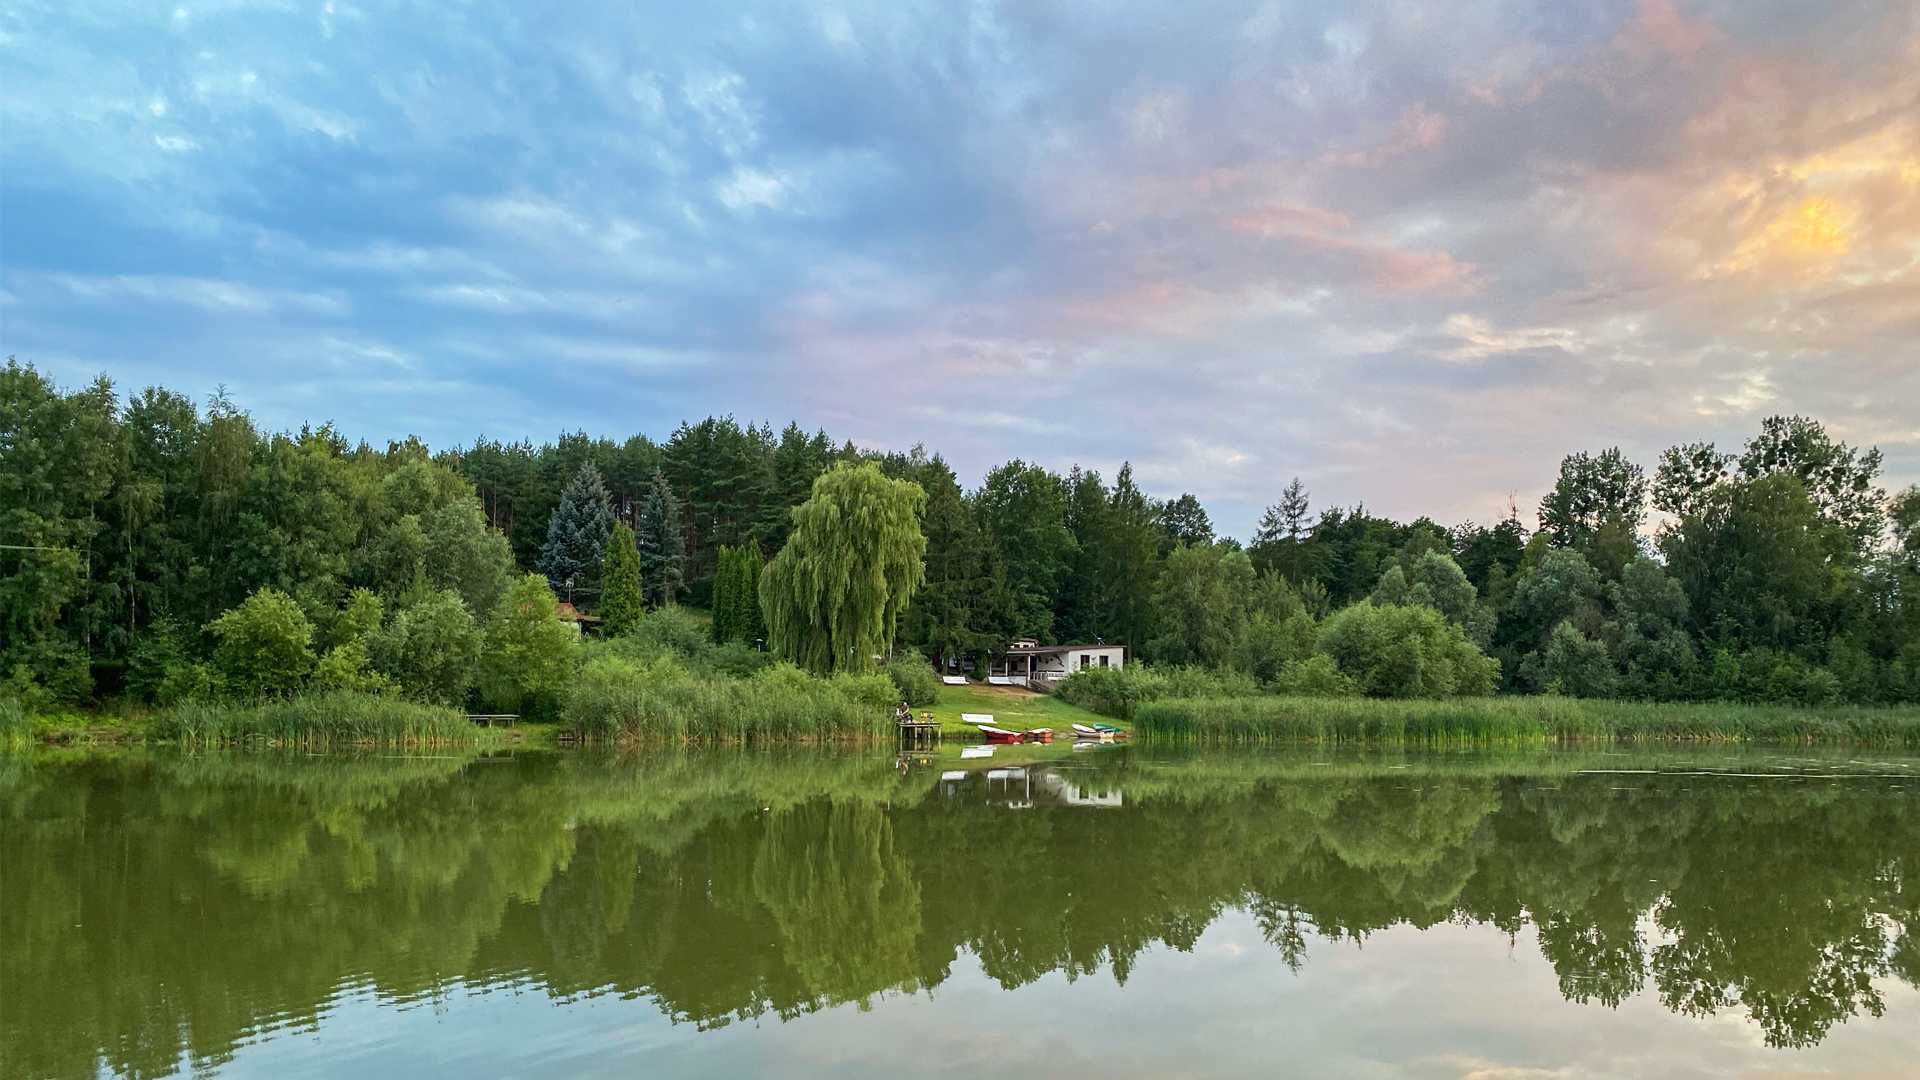 Domki letniskowe - łowisko wędkarskie - jezioro Ostrowite